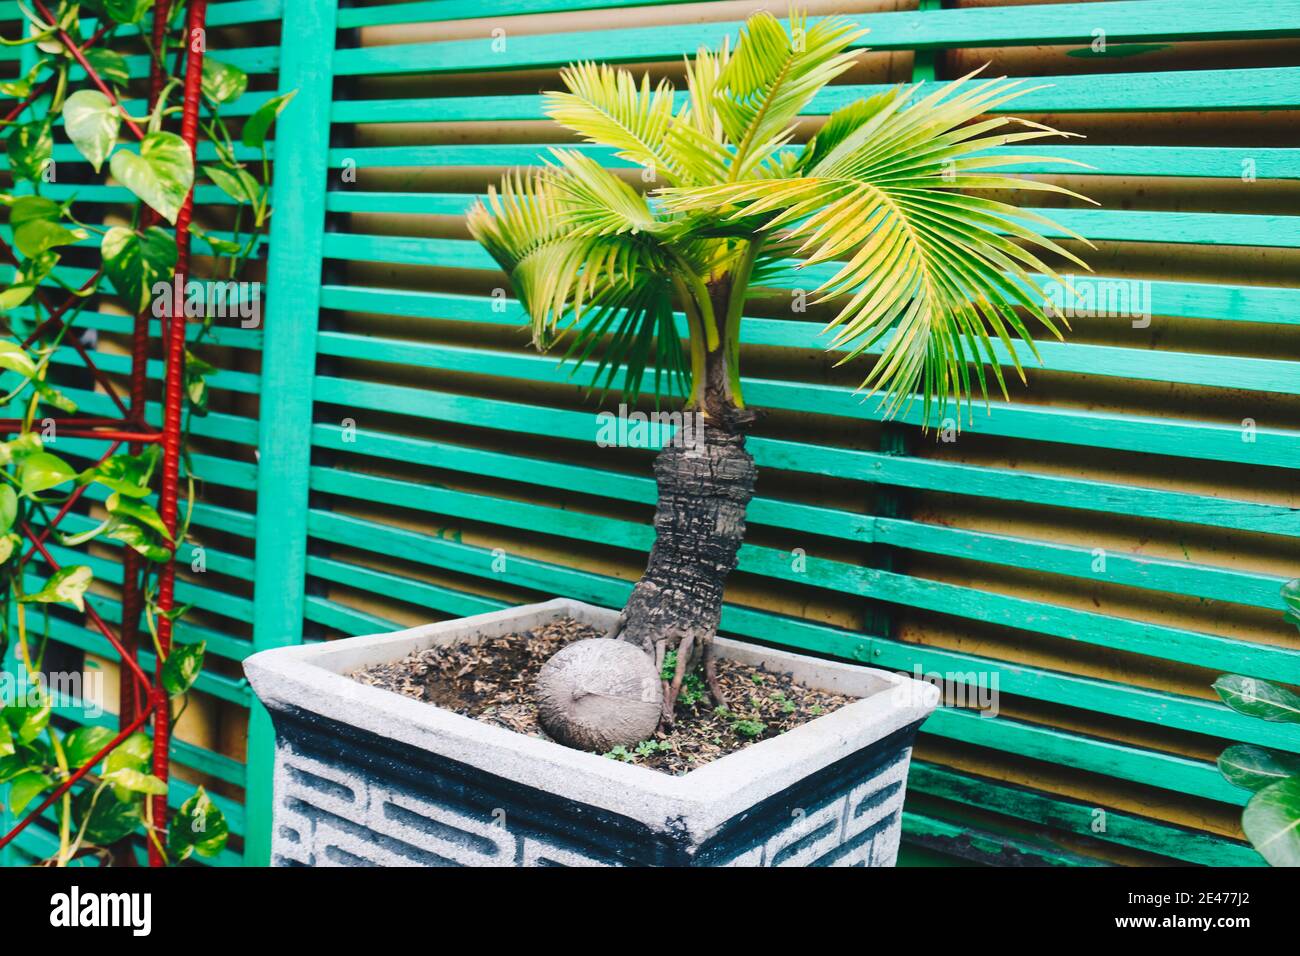 Maceta árbol de palma_Mi casa